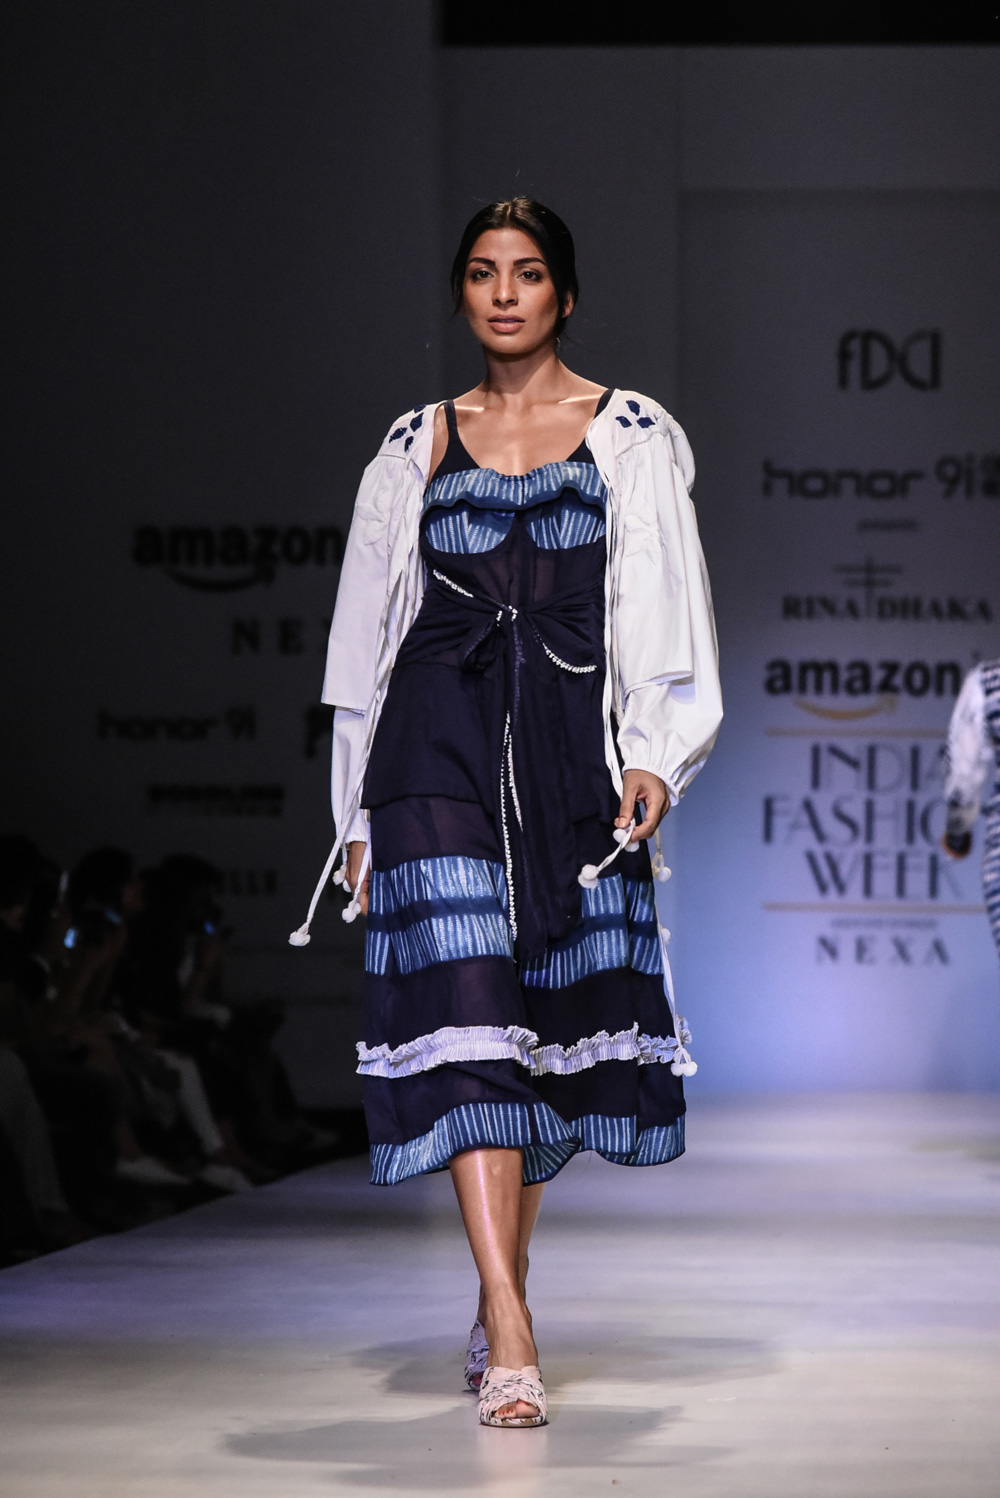 Rina Dhaka FDCI Amazon India Fashion Week Spring Summer 2018 Look 9